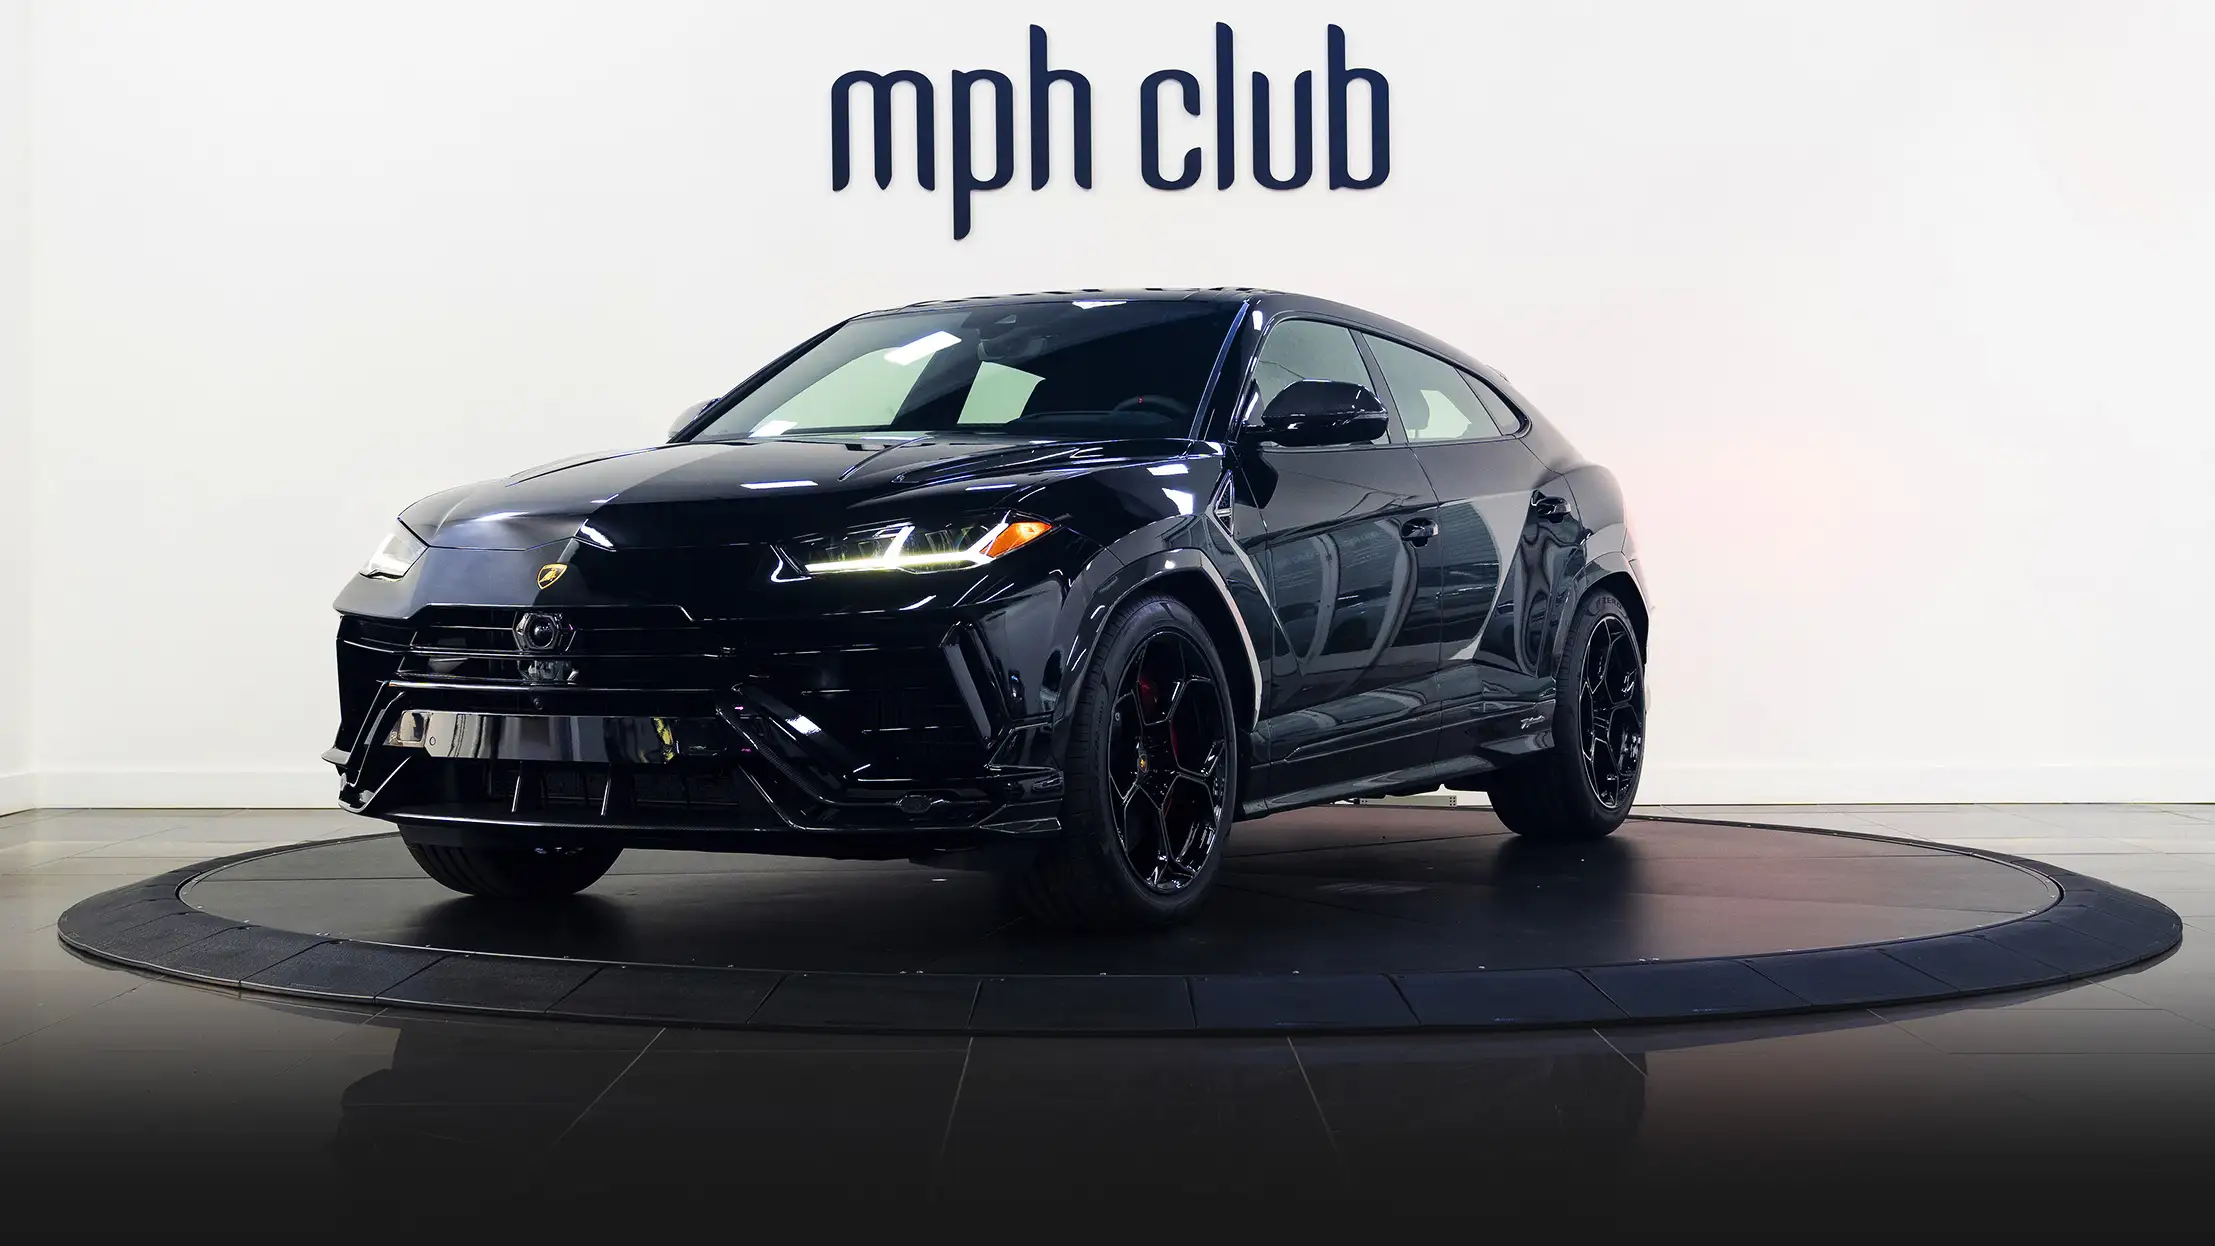 Black Lamborghini Urus Performante rental profile view mph club